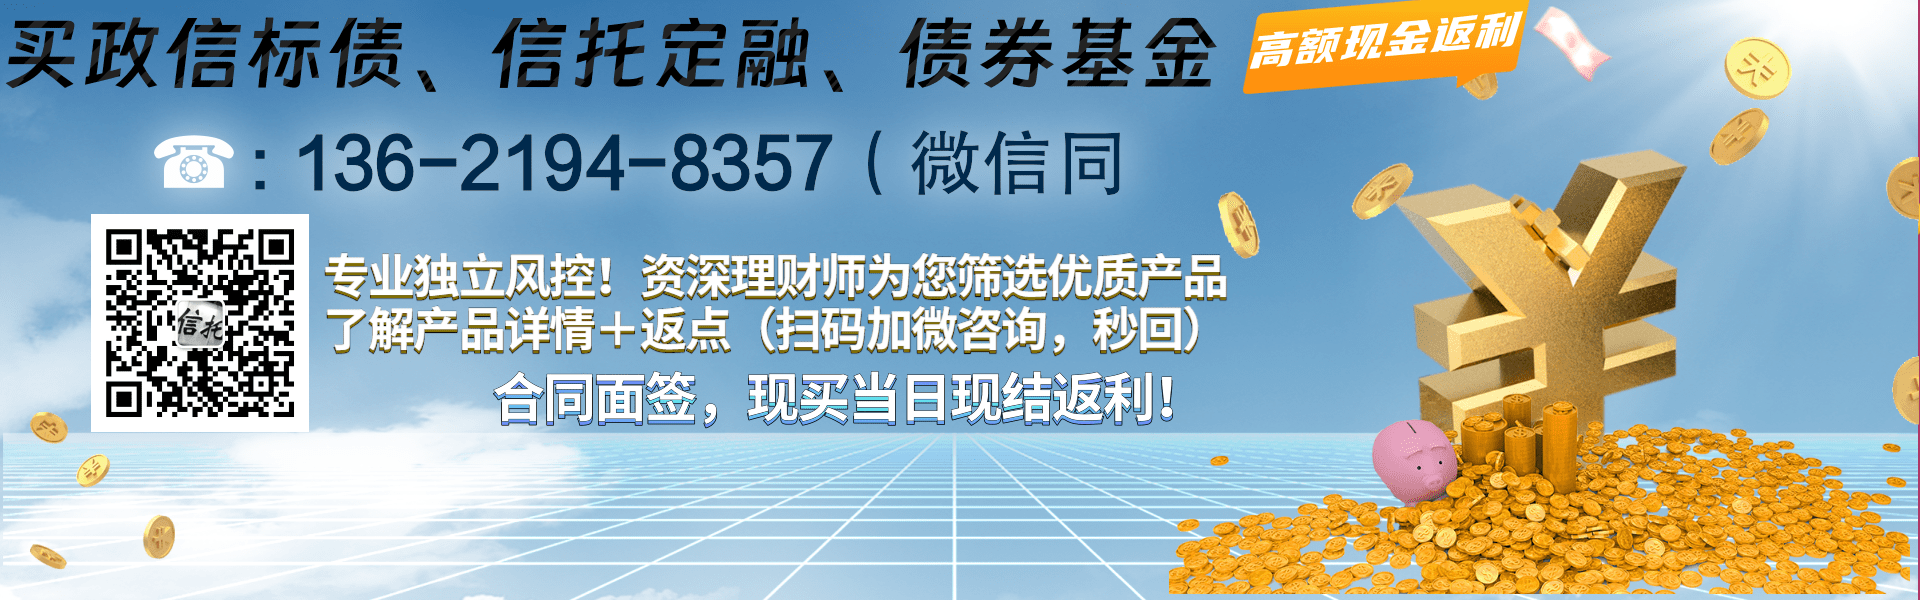 央企信托-锐银642号浙江湖州项目集合资金信托计划